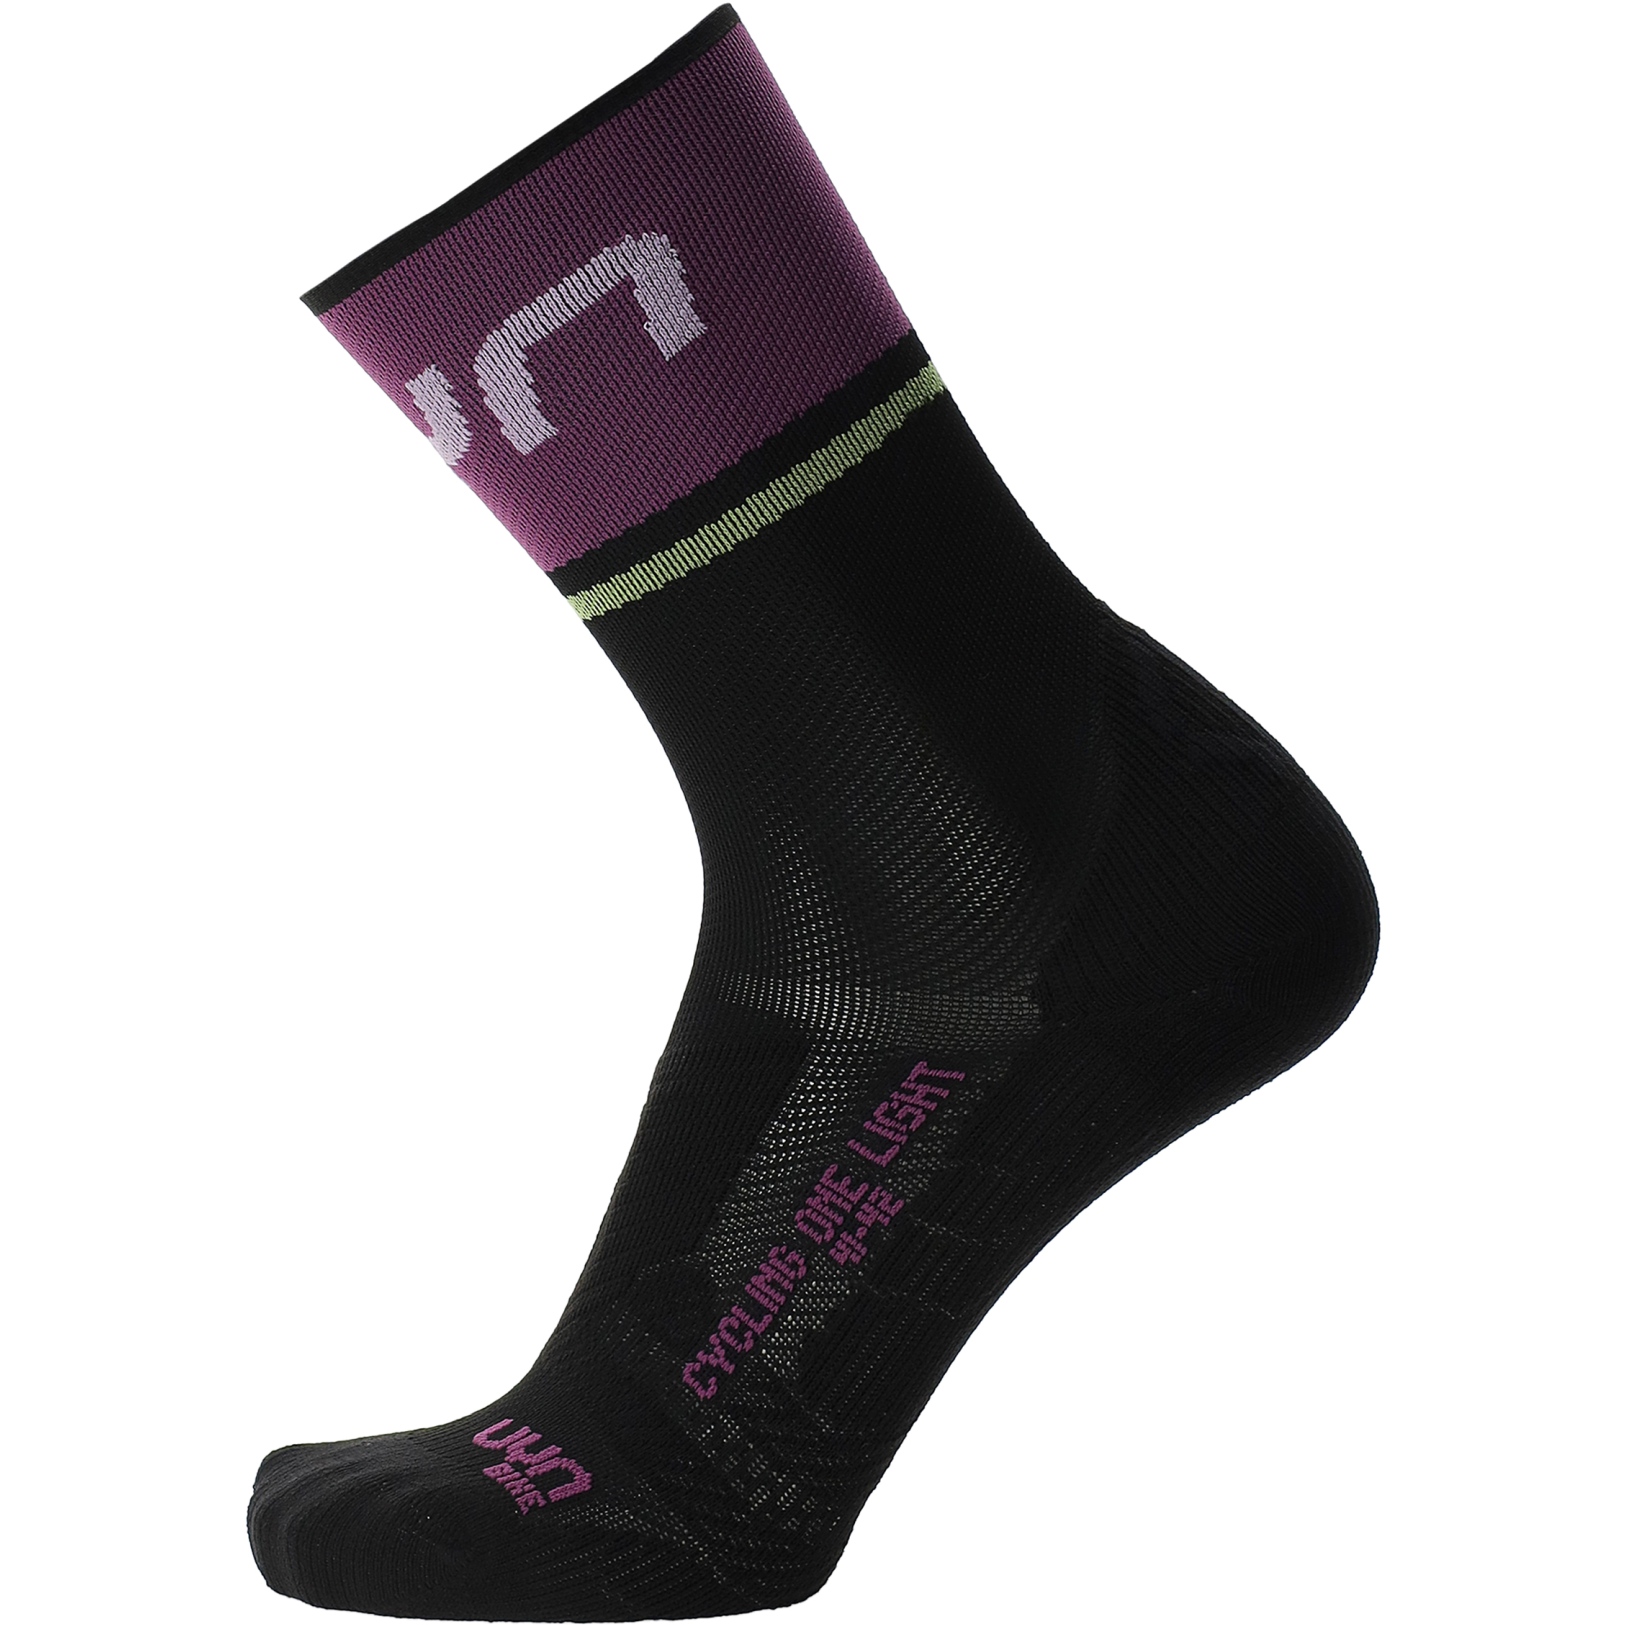 Produktbild von UYN Cycling One Light Socken Damen - Schwarz/Violet